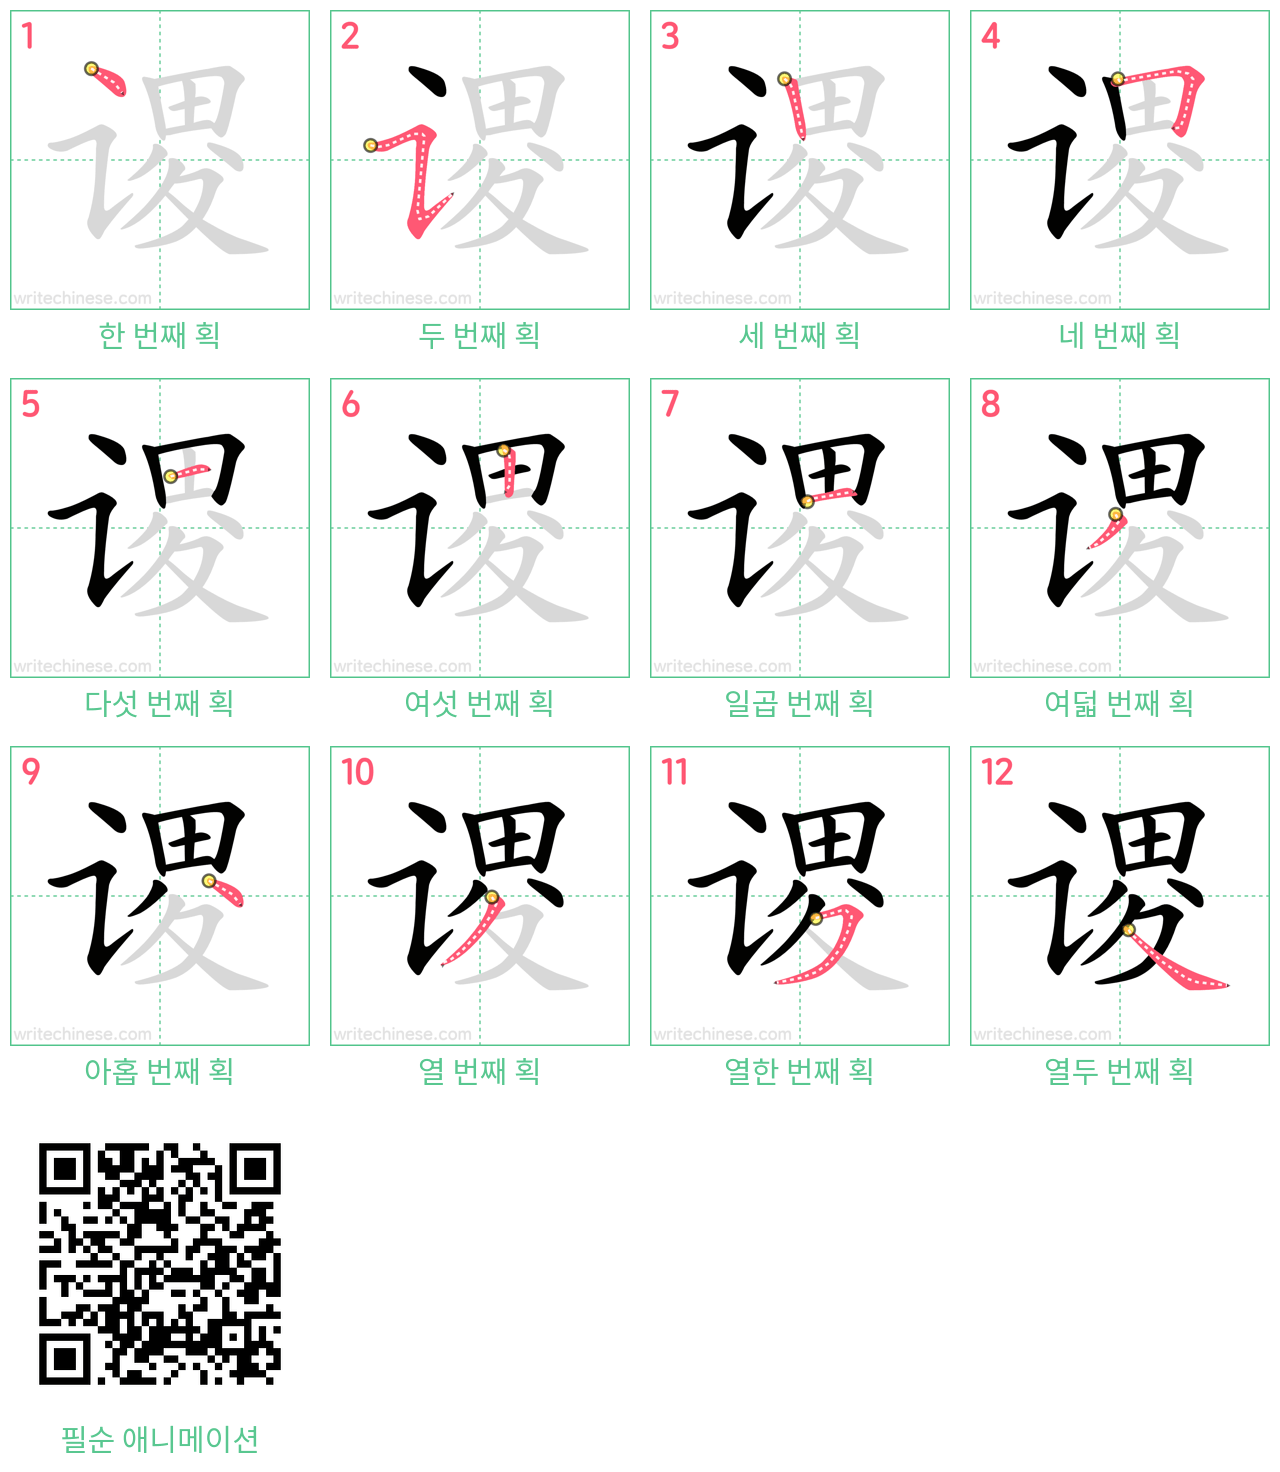 谡 step-by-step stroke order diagrams